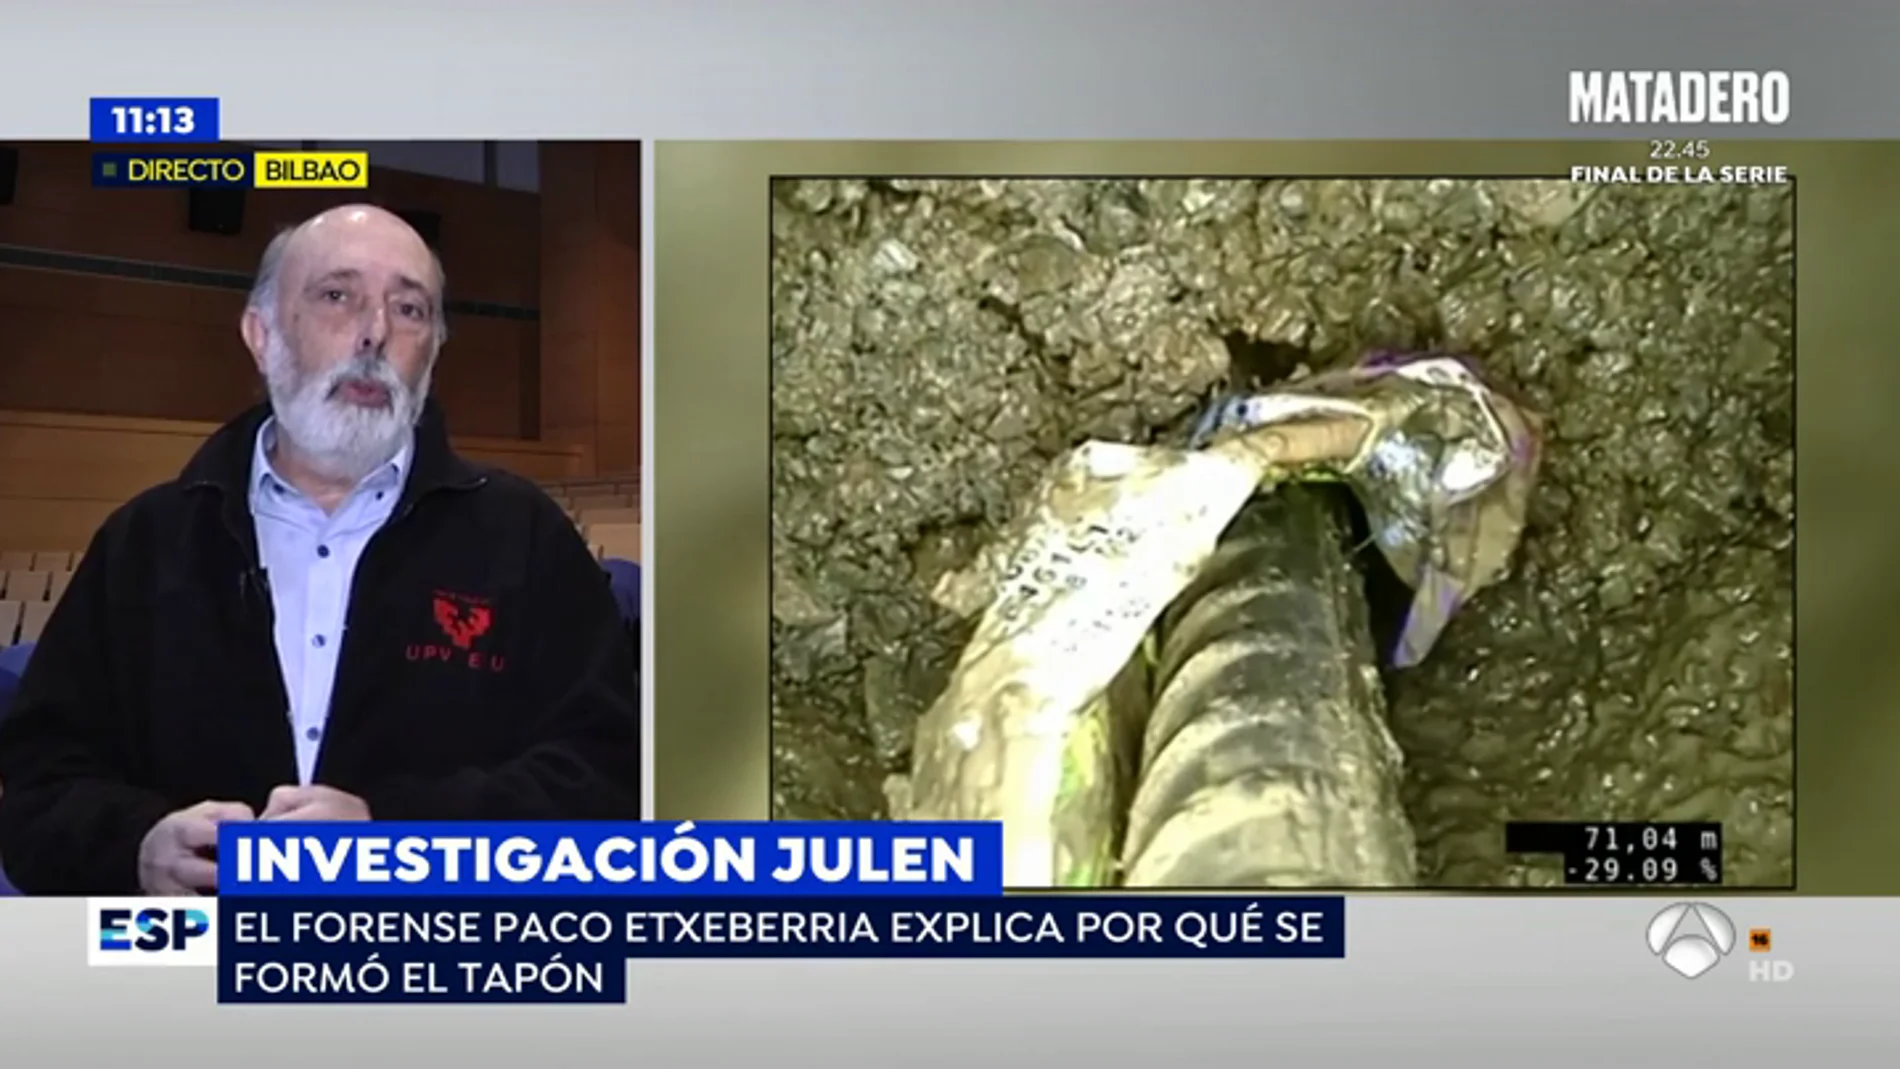 El forense Paco Extebarria asegura que Julen perdió el conocimiento de forma inmediata y murió acto seguido